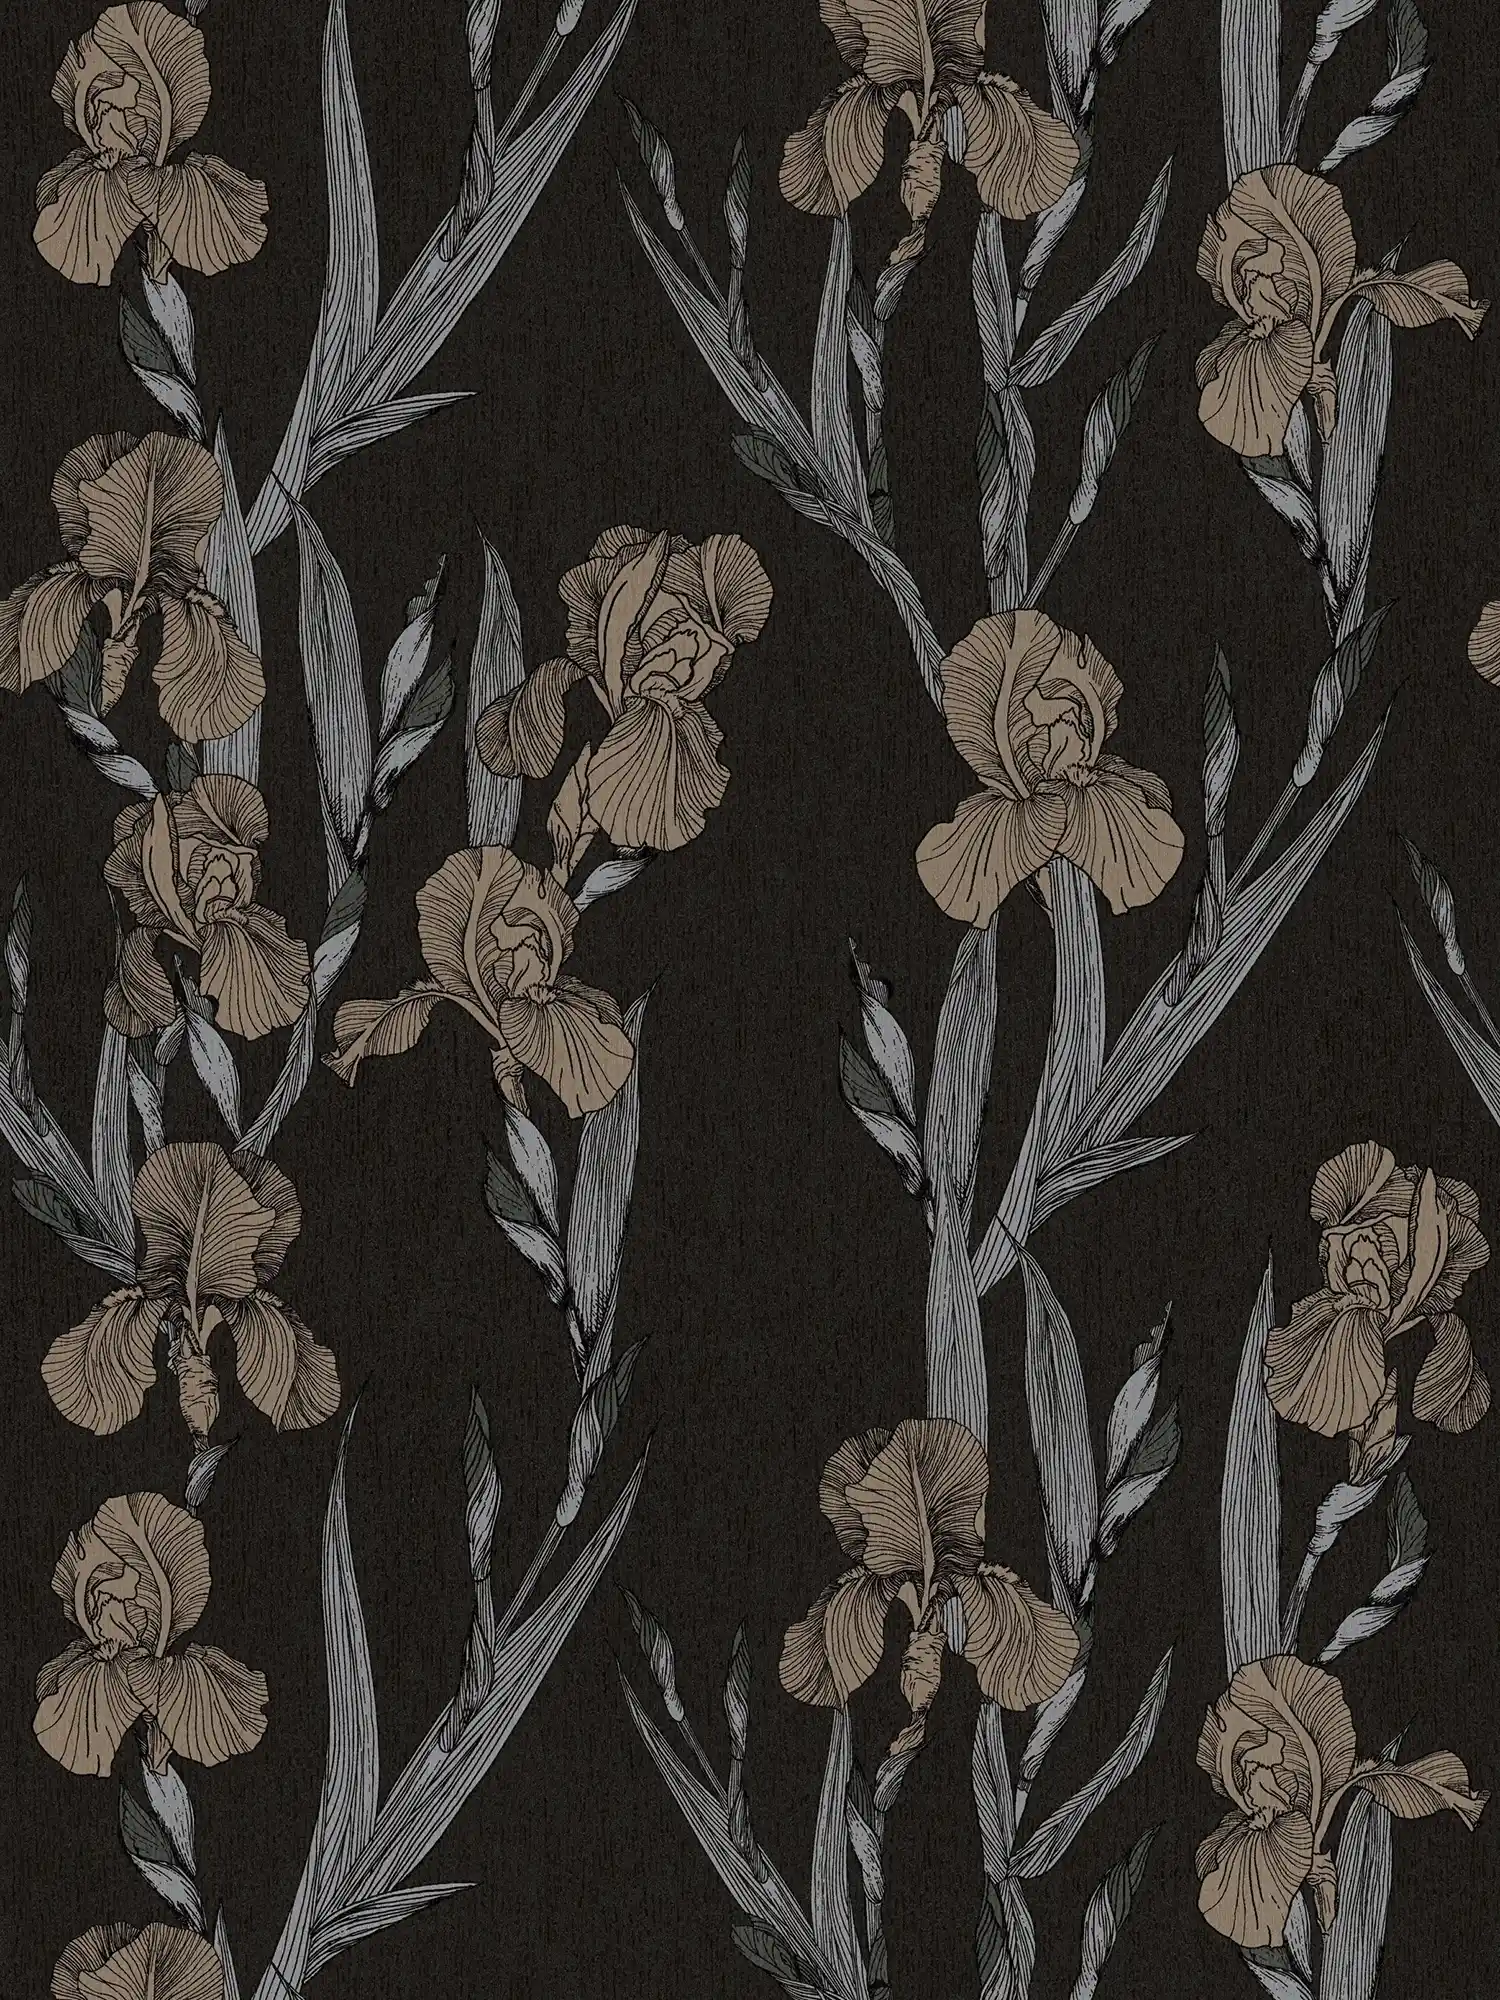 Bloemenpatroon behang met bloesems in tekenstijl - zwart, grijs, bruin
